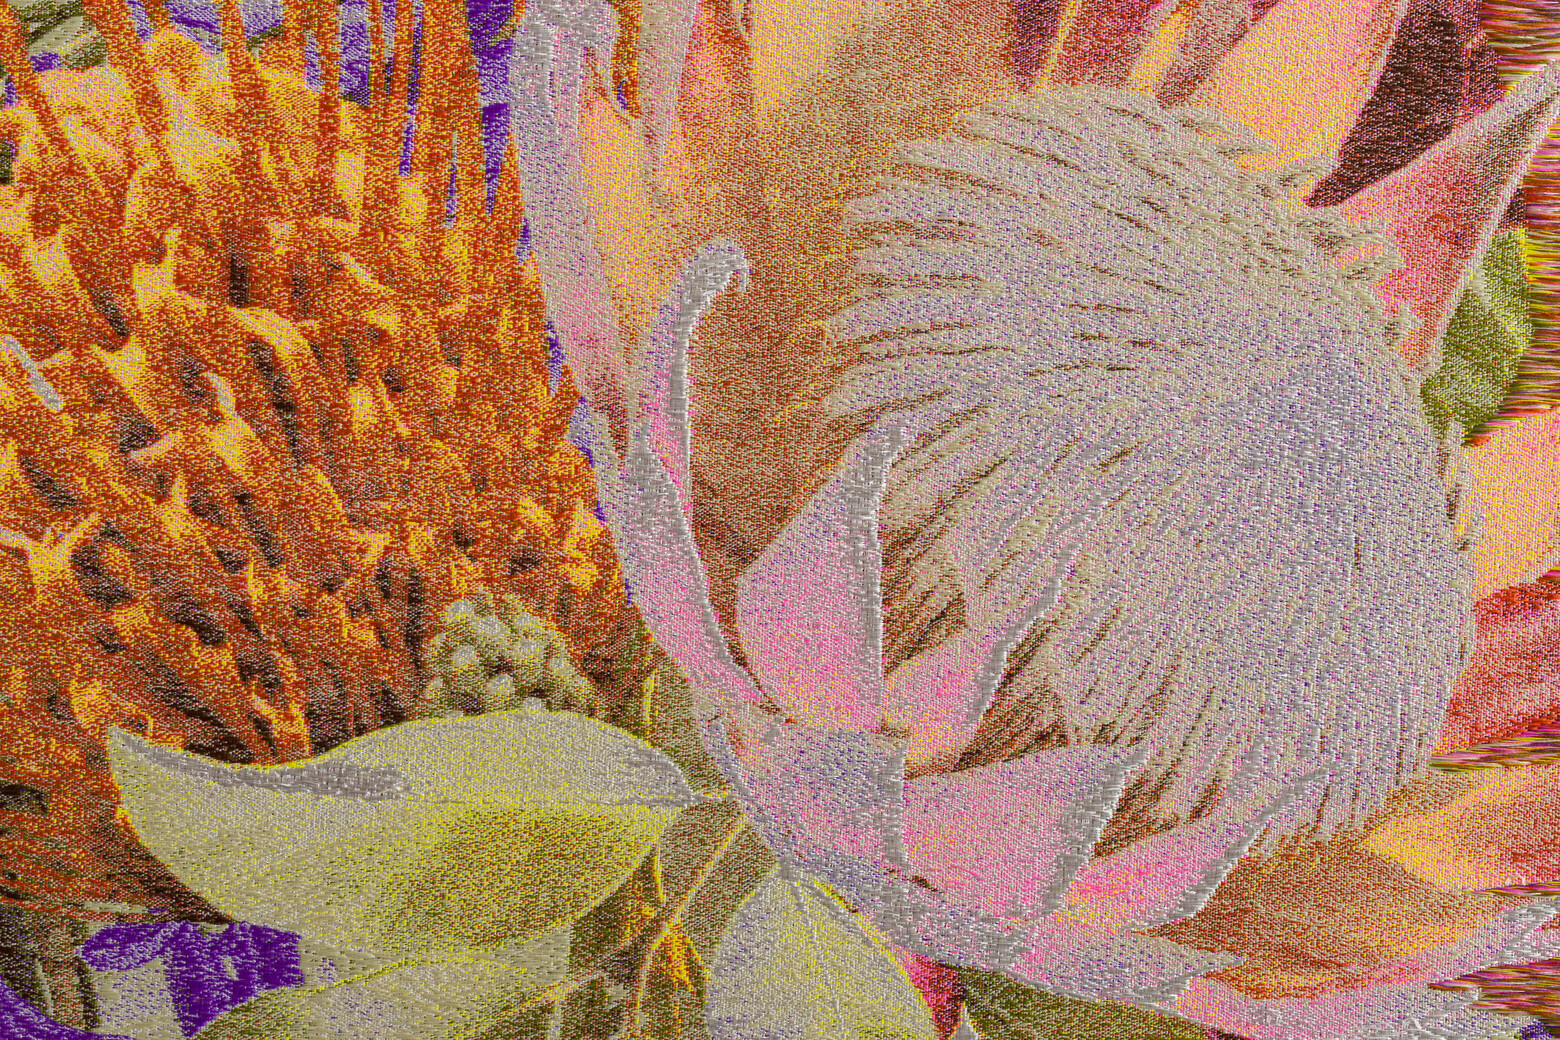 The Art of Living Together 中的《太陽鳥與熱帶花卉 1.0》，藉由紡織計法詮釋出不同物種的色彩。